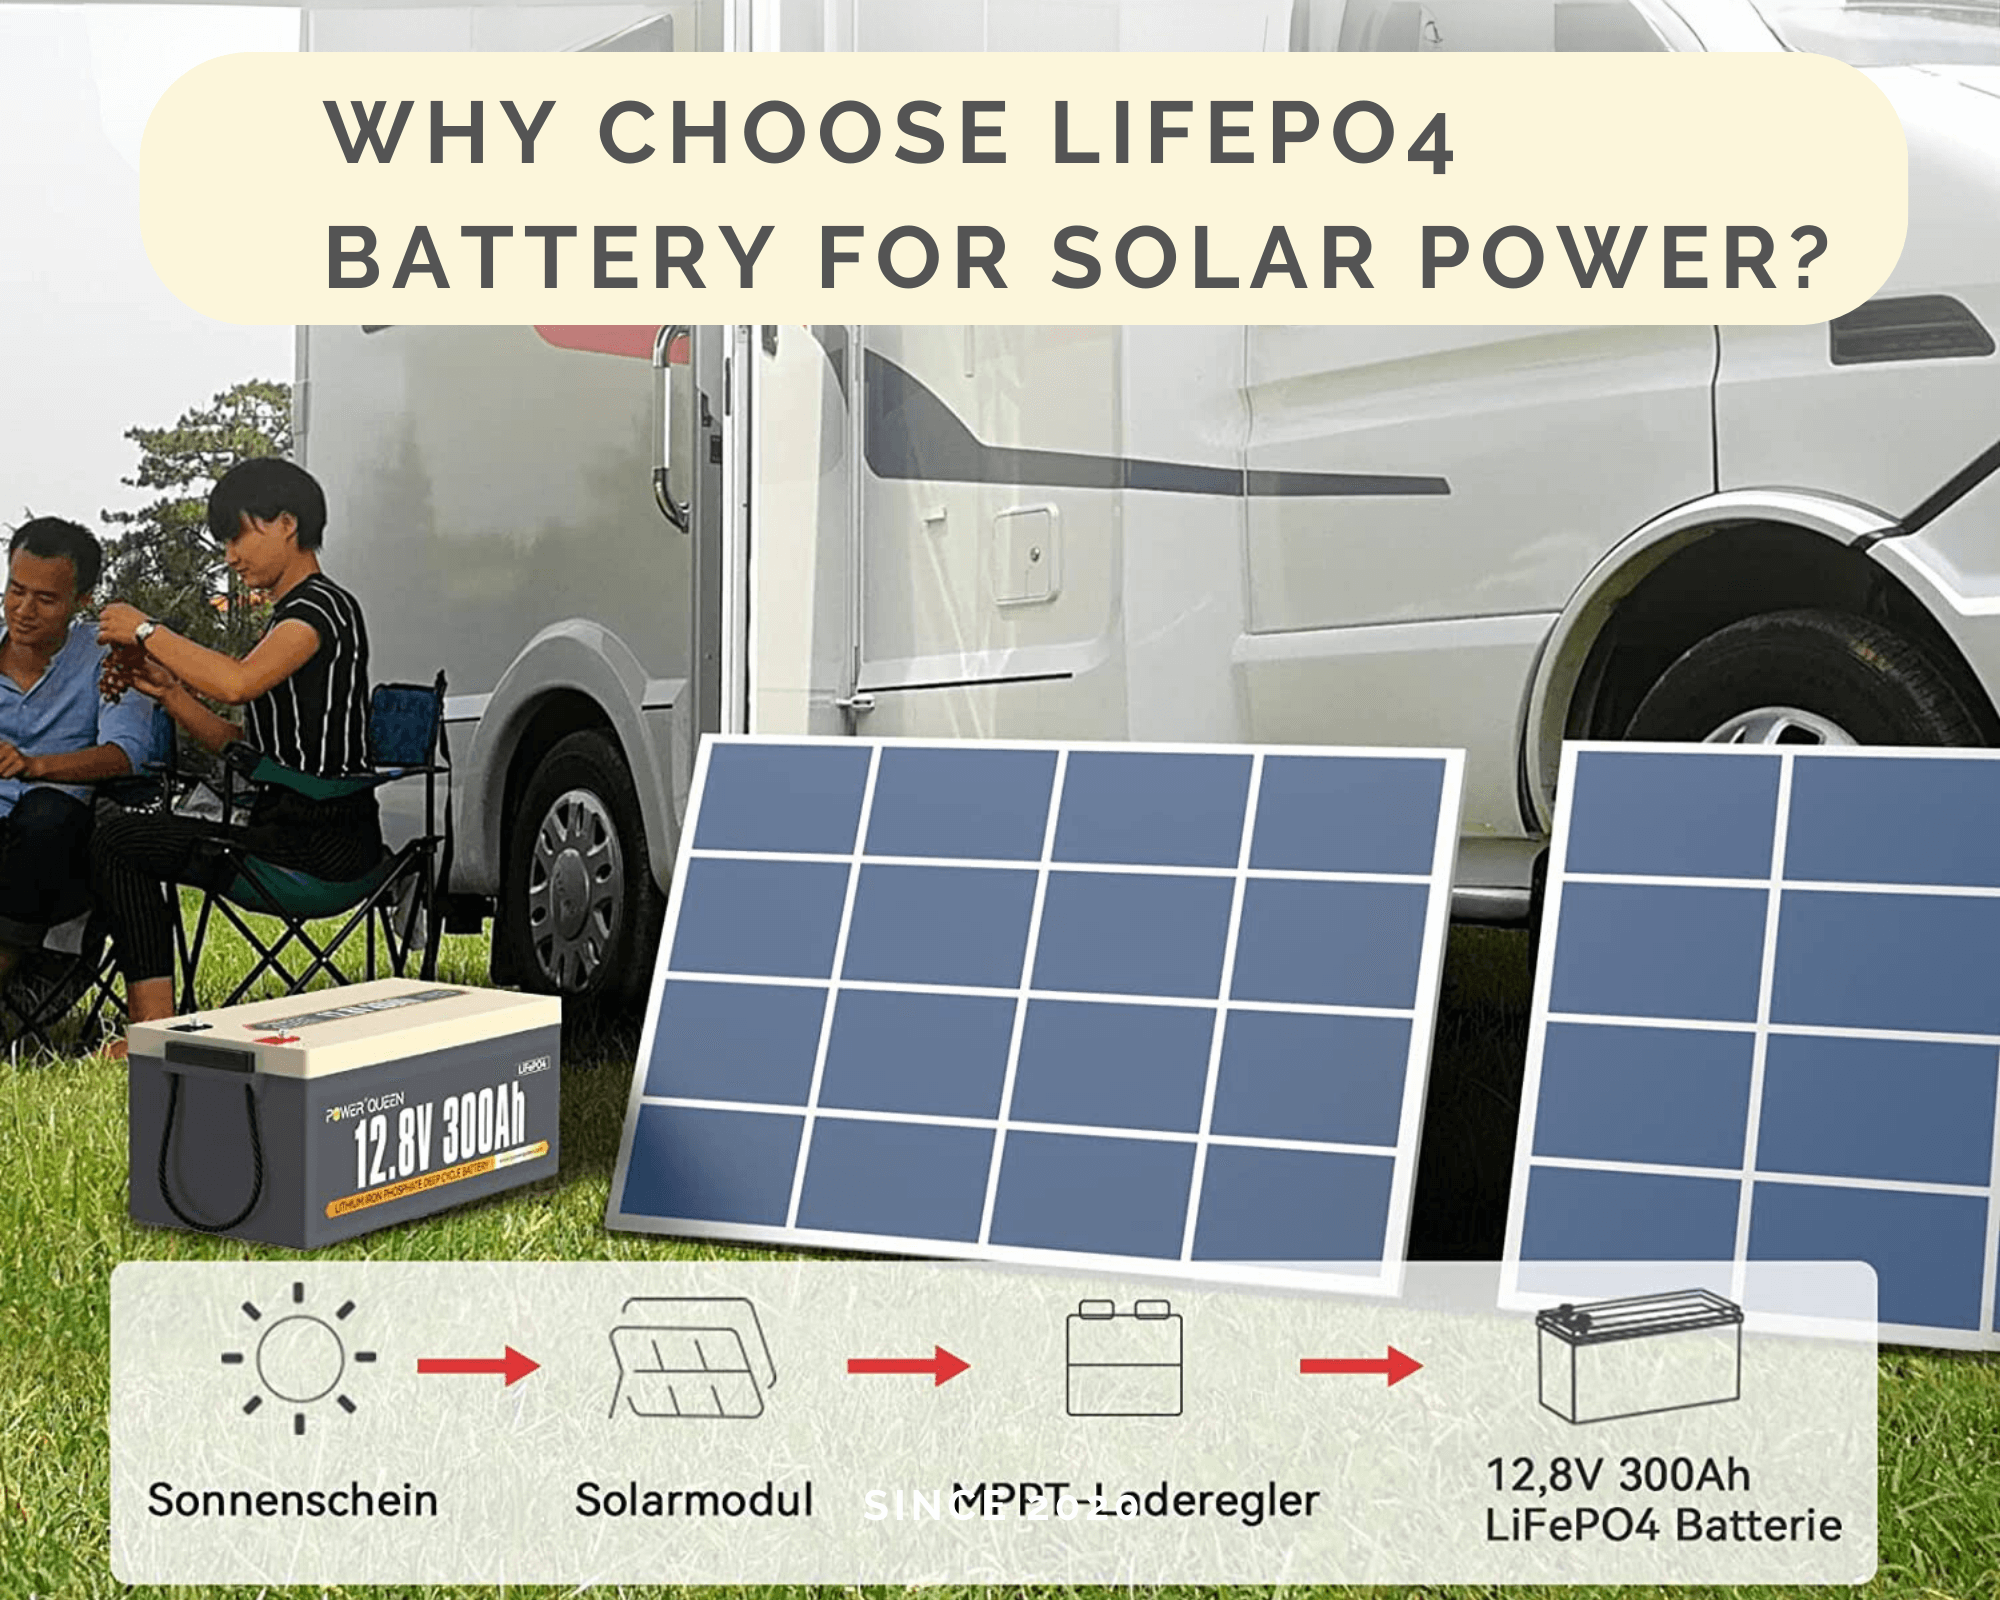 لماذا تختار بطارية LiFePO4 للطاقة الشمسية؟